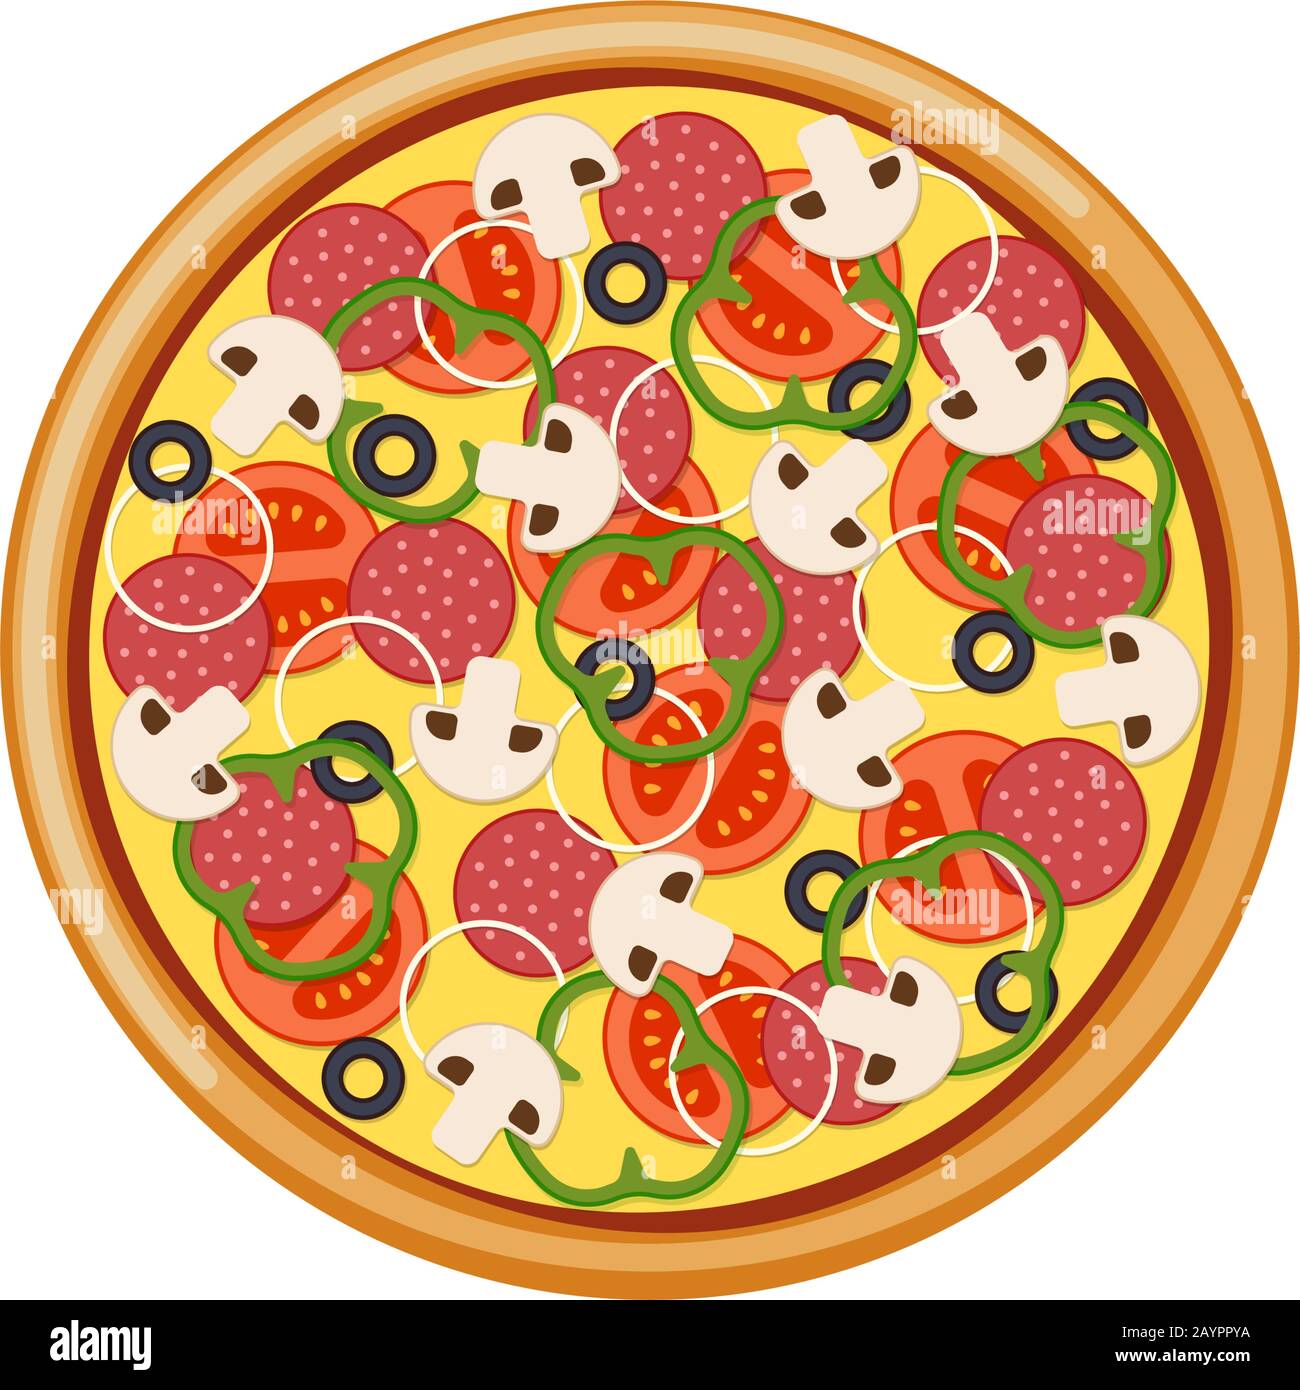 Pizza mit Tomaten in Scheiben Champignons Salamiwurst Zwiebelpfeffer schwarze Oliven und Käse. Italienische F.A.S.T. Food-isolierte Vektorgrafiken Stock Vektor